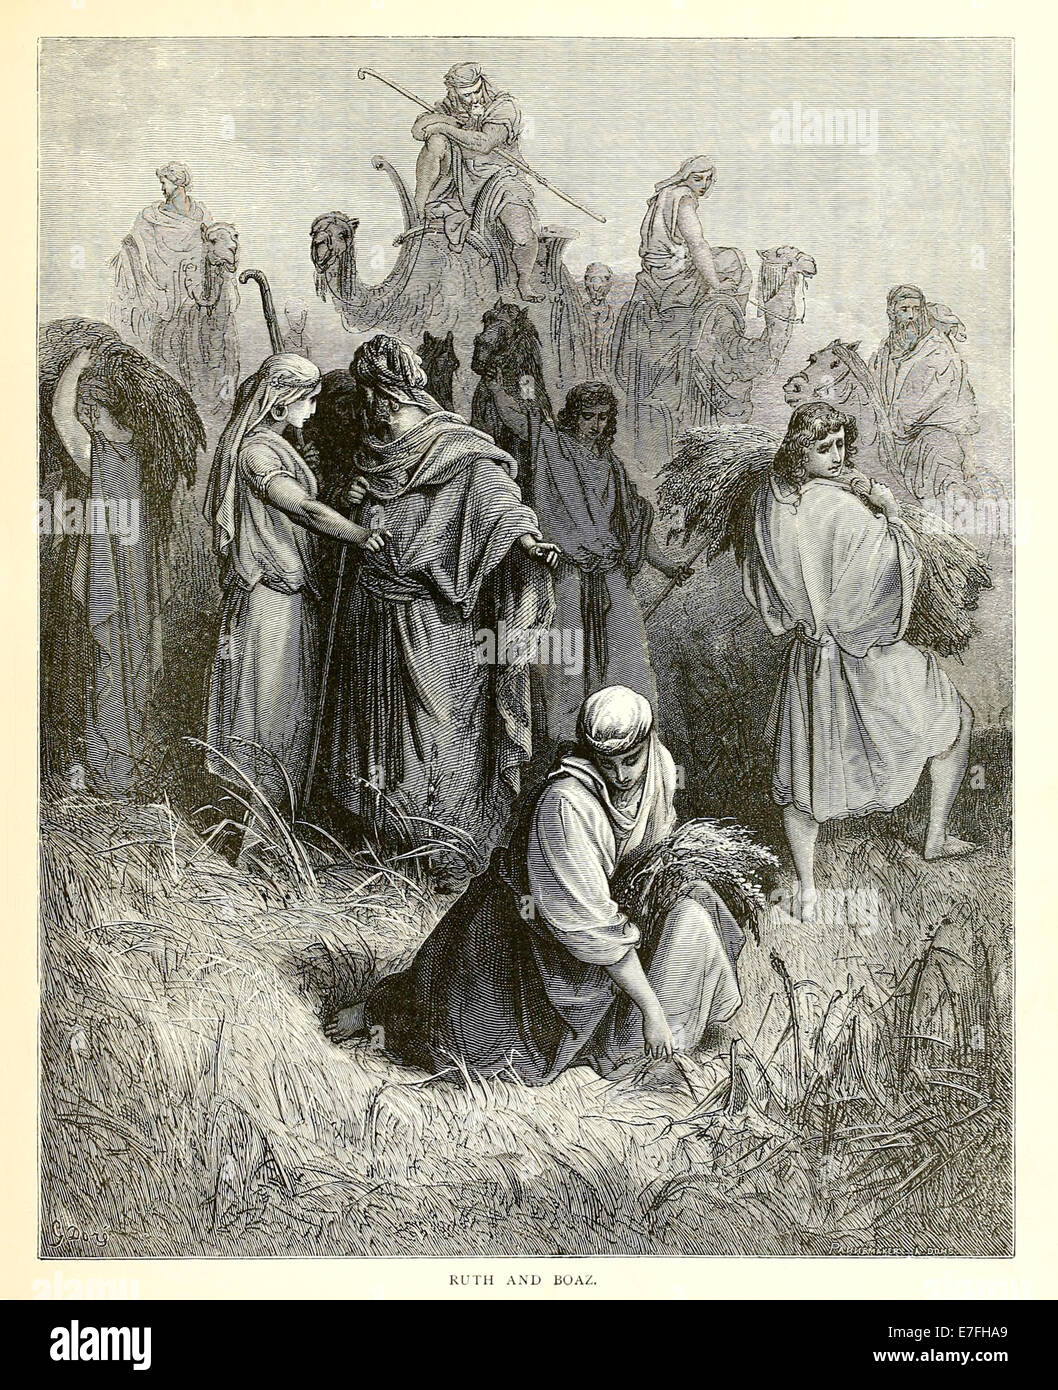 Illustration von Paul Gustave Doré (1832-1883) von 1880 Ausgabe der Bibel. Siehe Beschreibung für mehr Informationen. Stockfoto